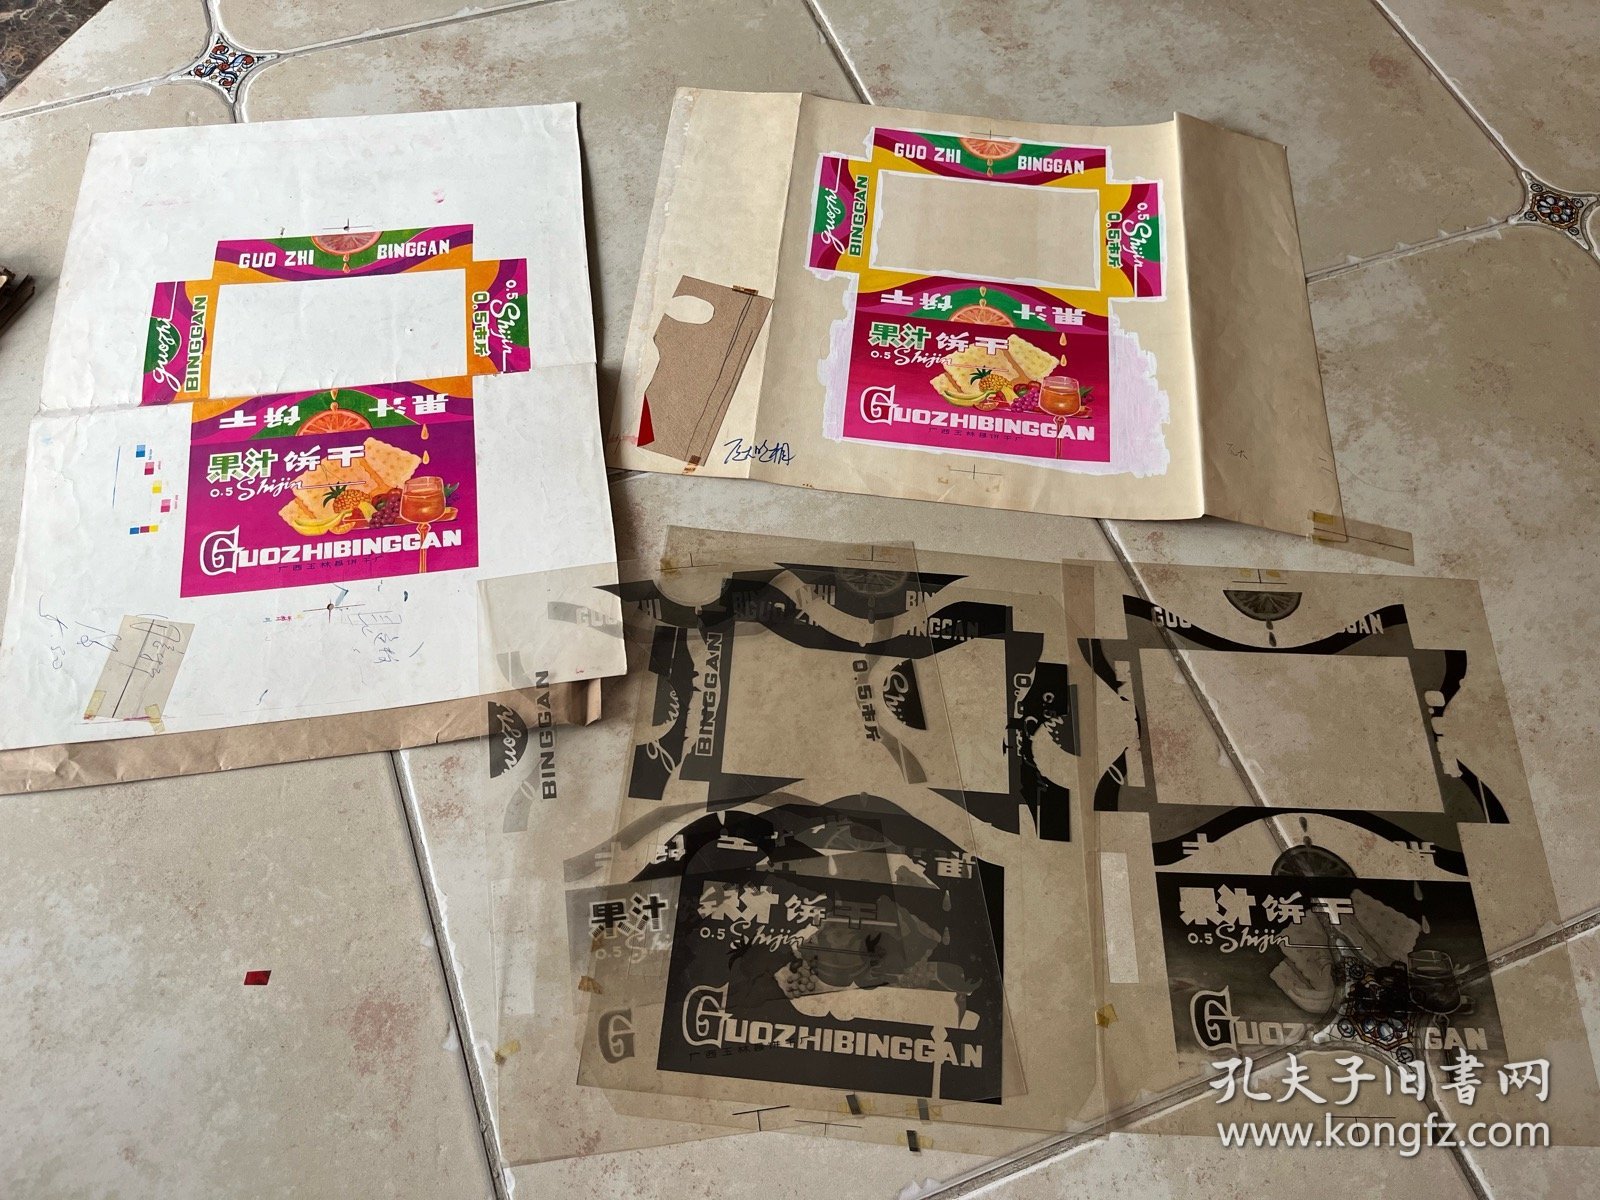 广西玉林县饼干厂“果汁饼干”包装盒手绘设计原稿、印刷菲林及样标一套